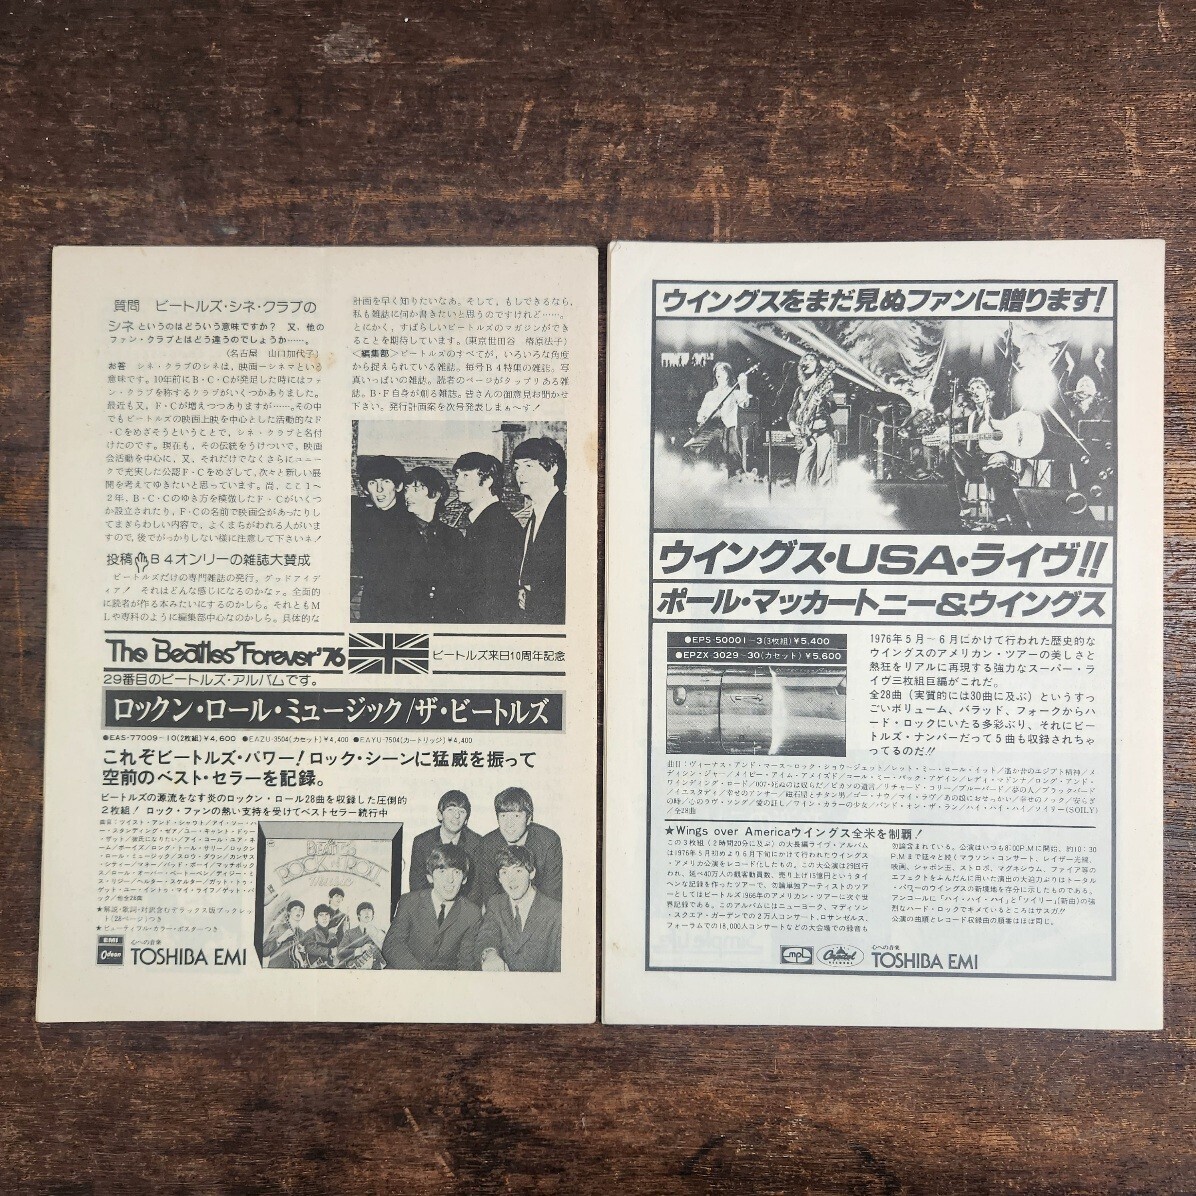 70s Beatles sine Club News подлинная вещь бюллетень журнал 6 пункт совместно THE BEATLES CINE CLUB Beatles восстановление праздник 